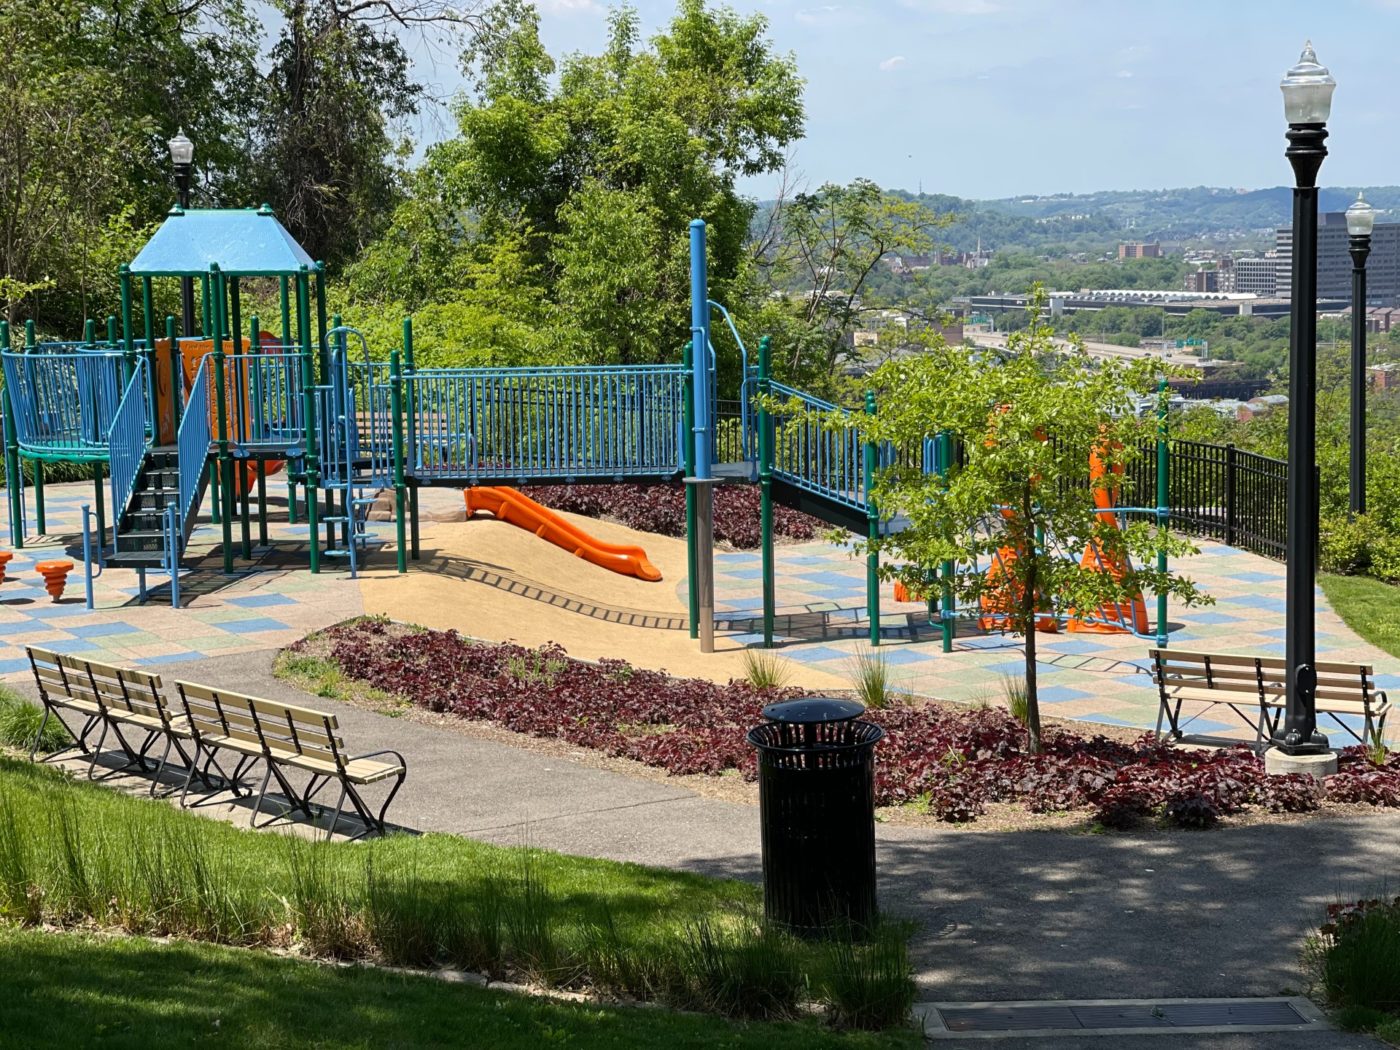 August Wilson Park Playground